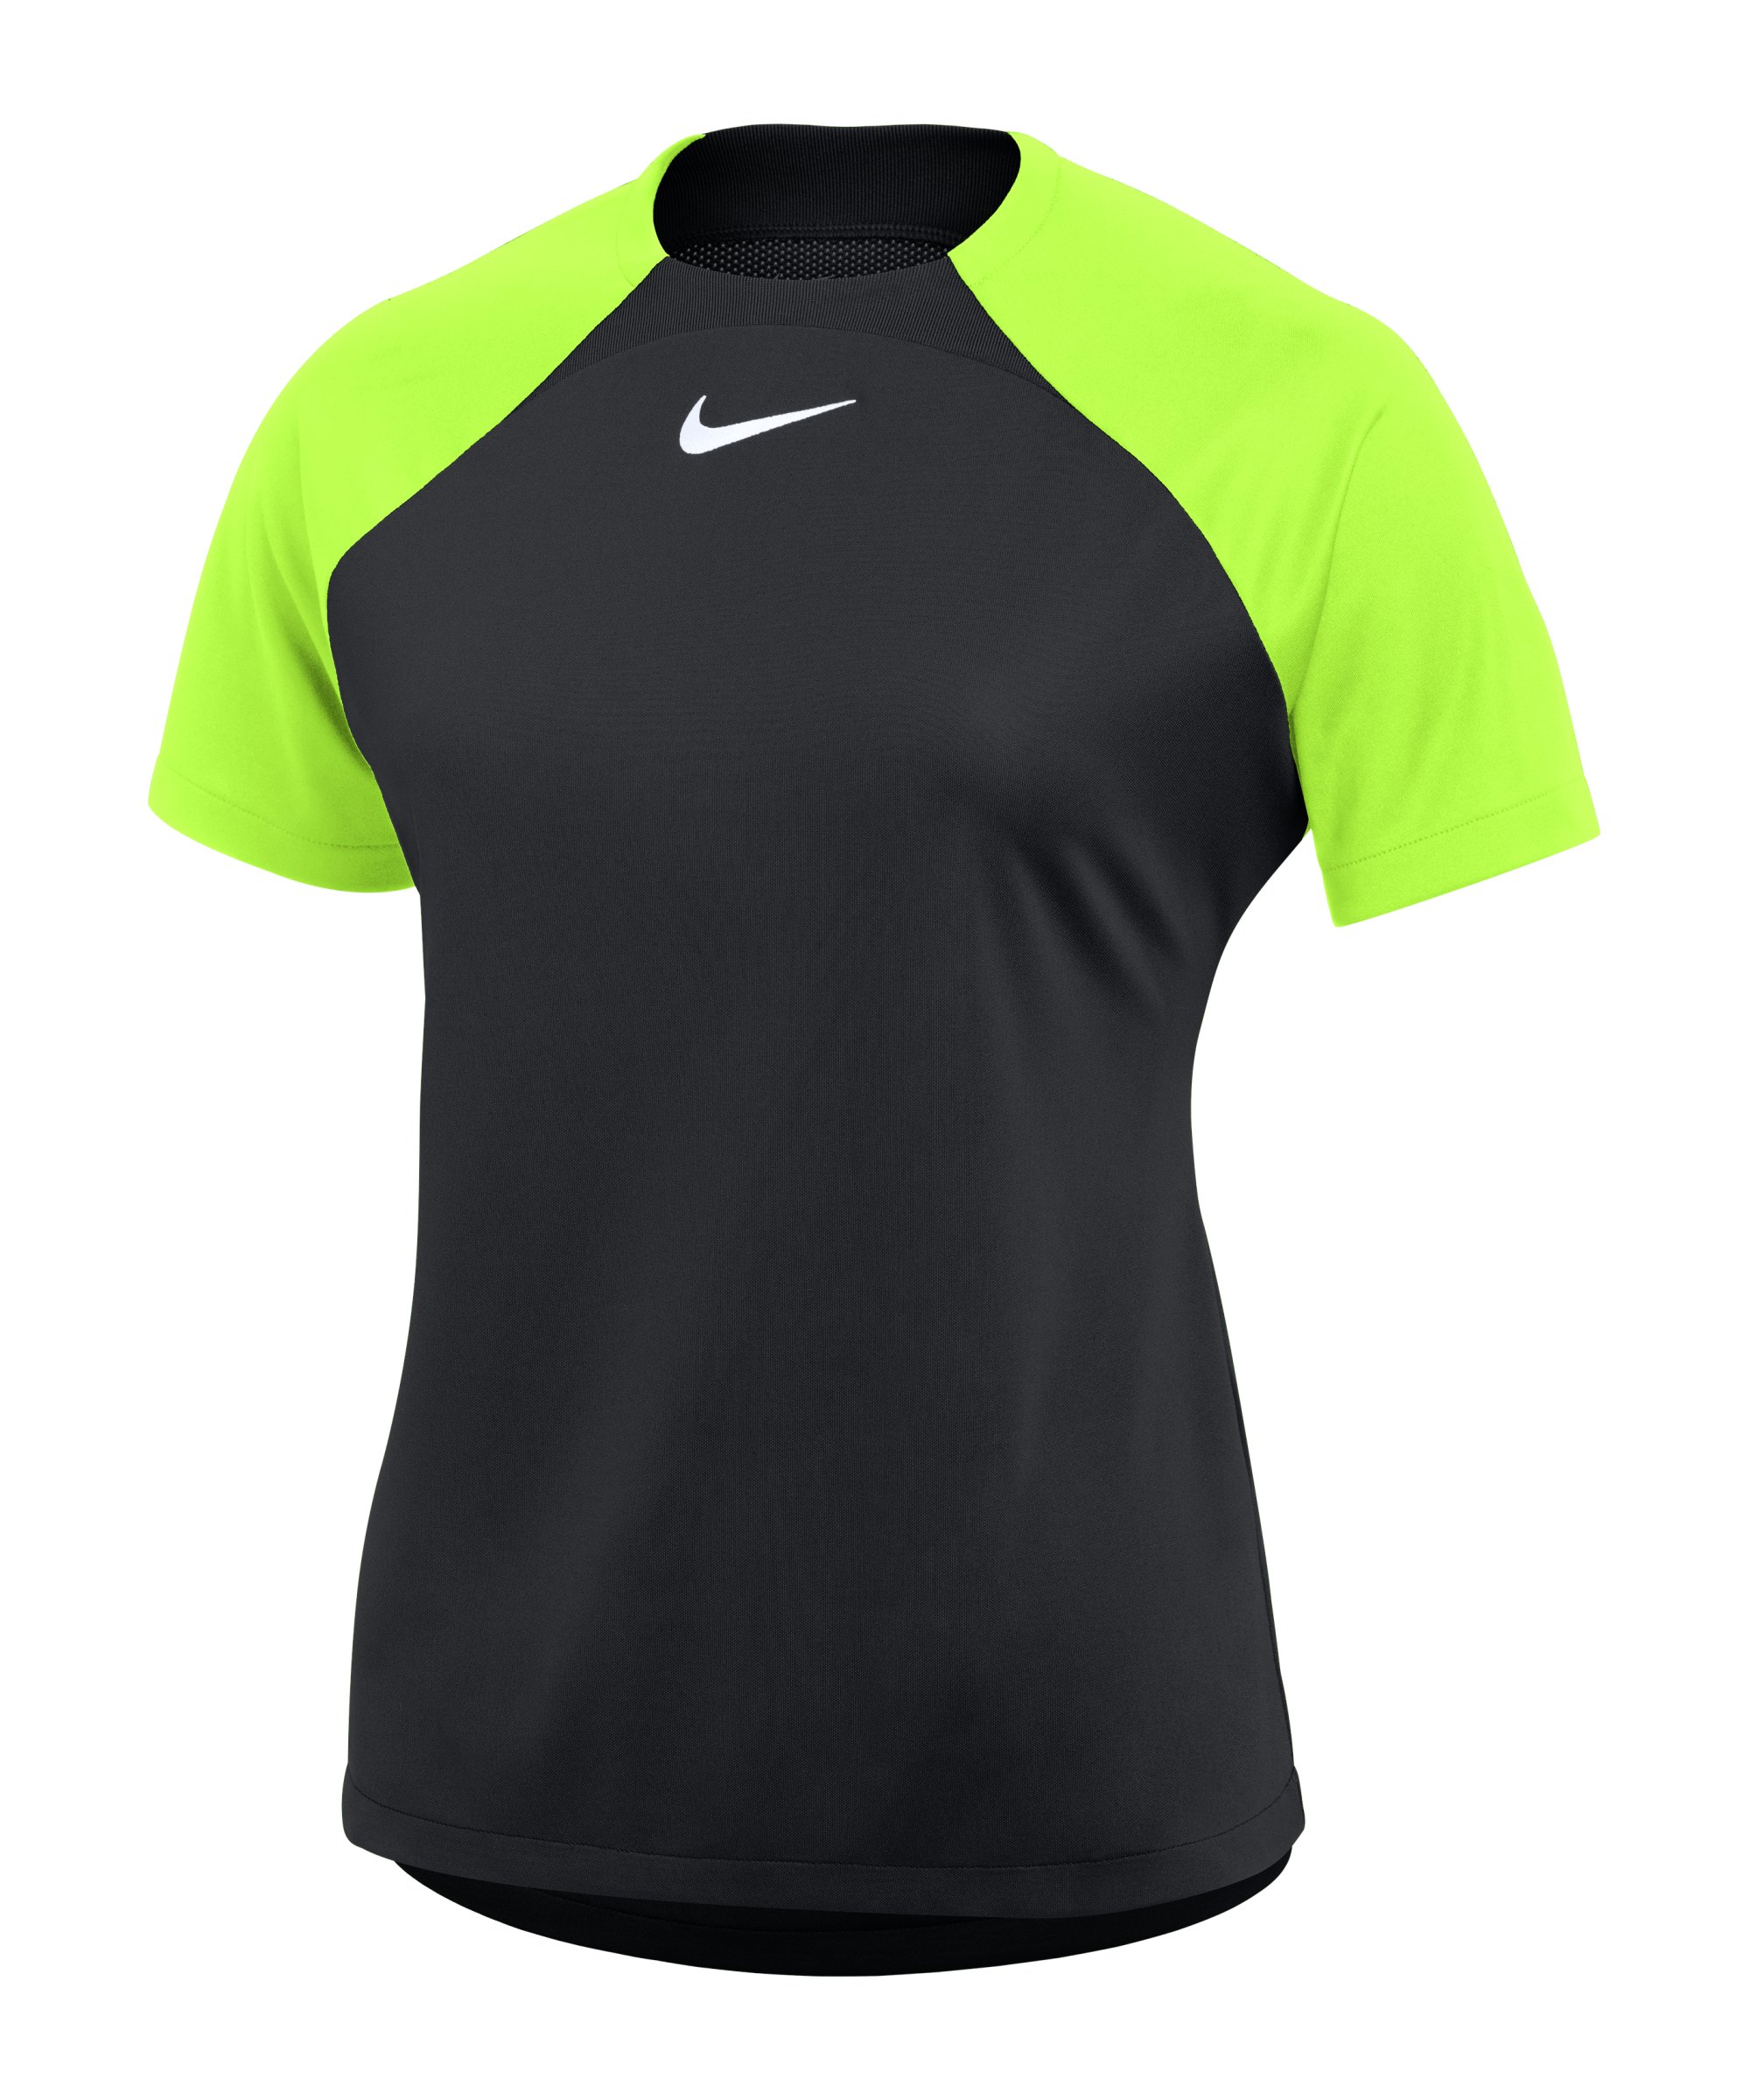 Nike Academy Pro Trainingsshirt Damen Schwarz Gelb F010 - schwarz